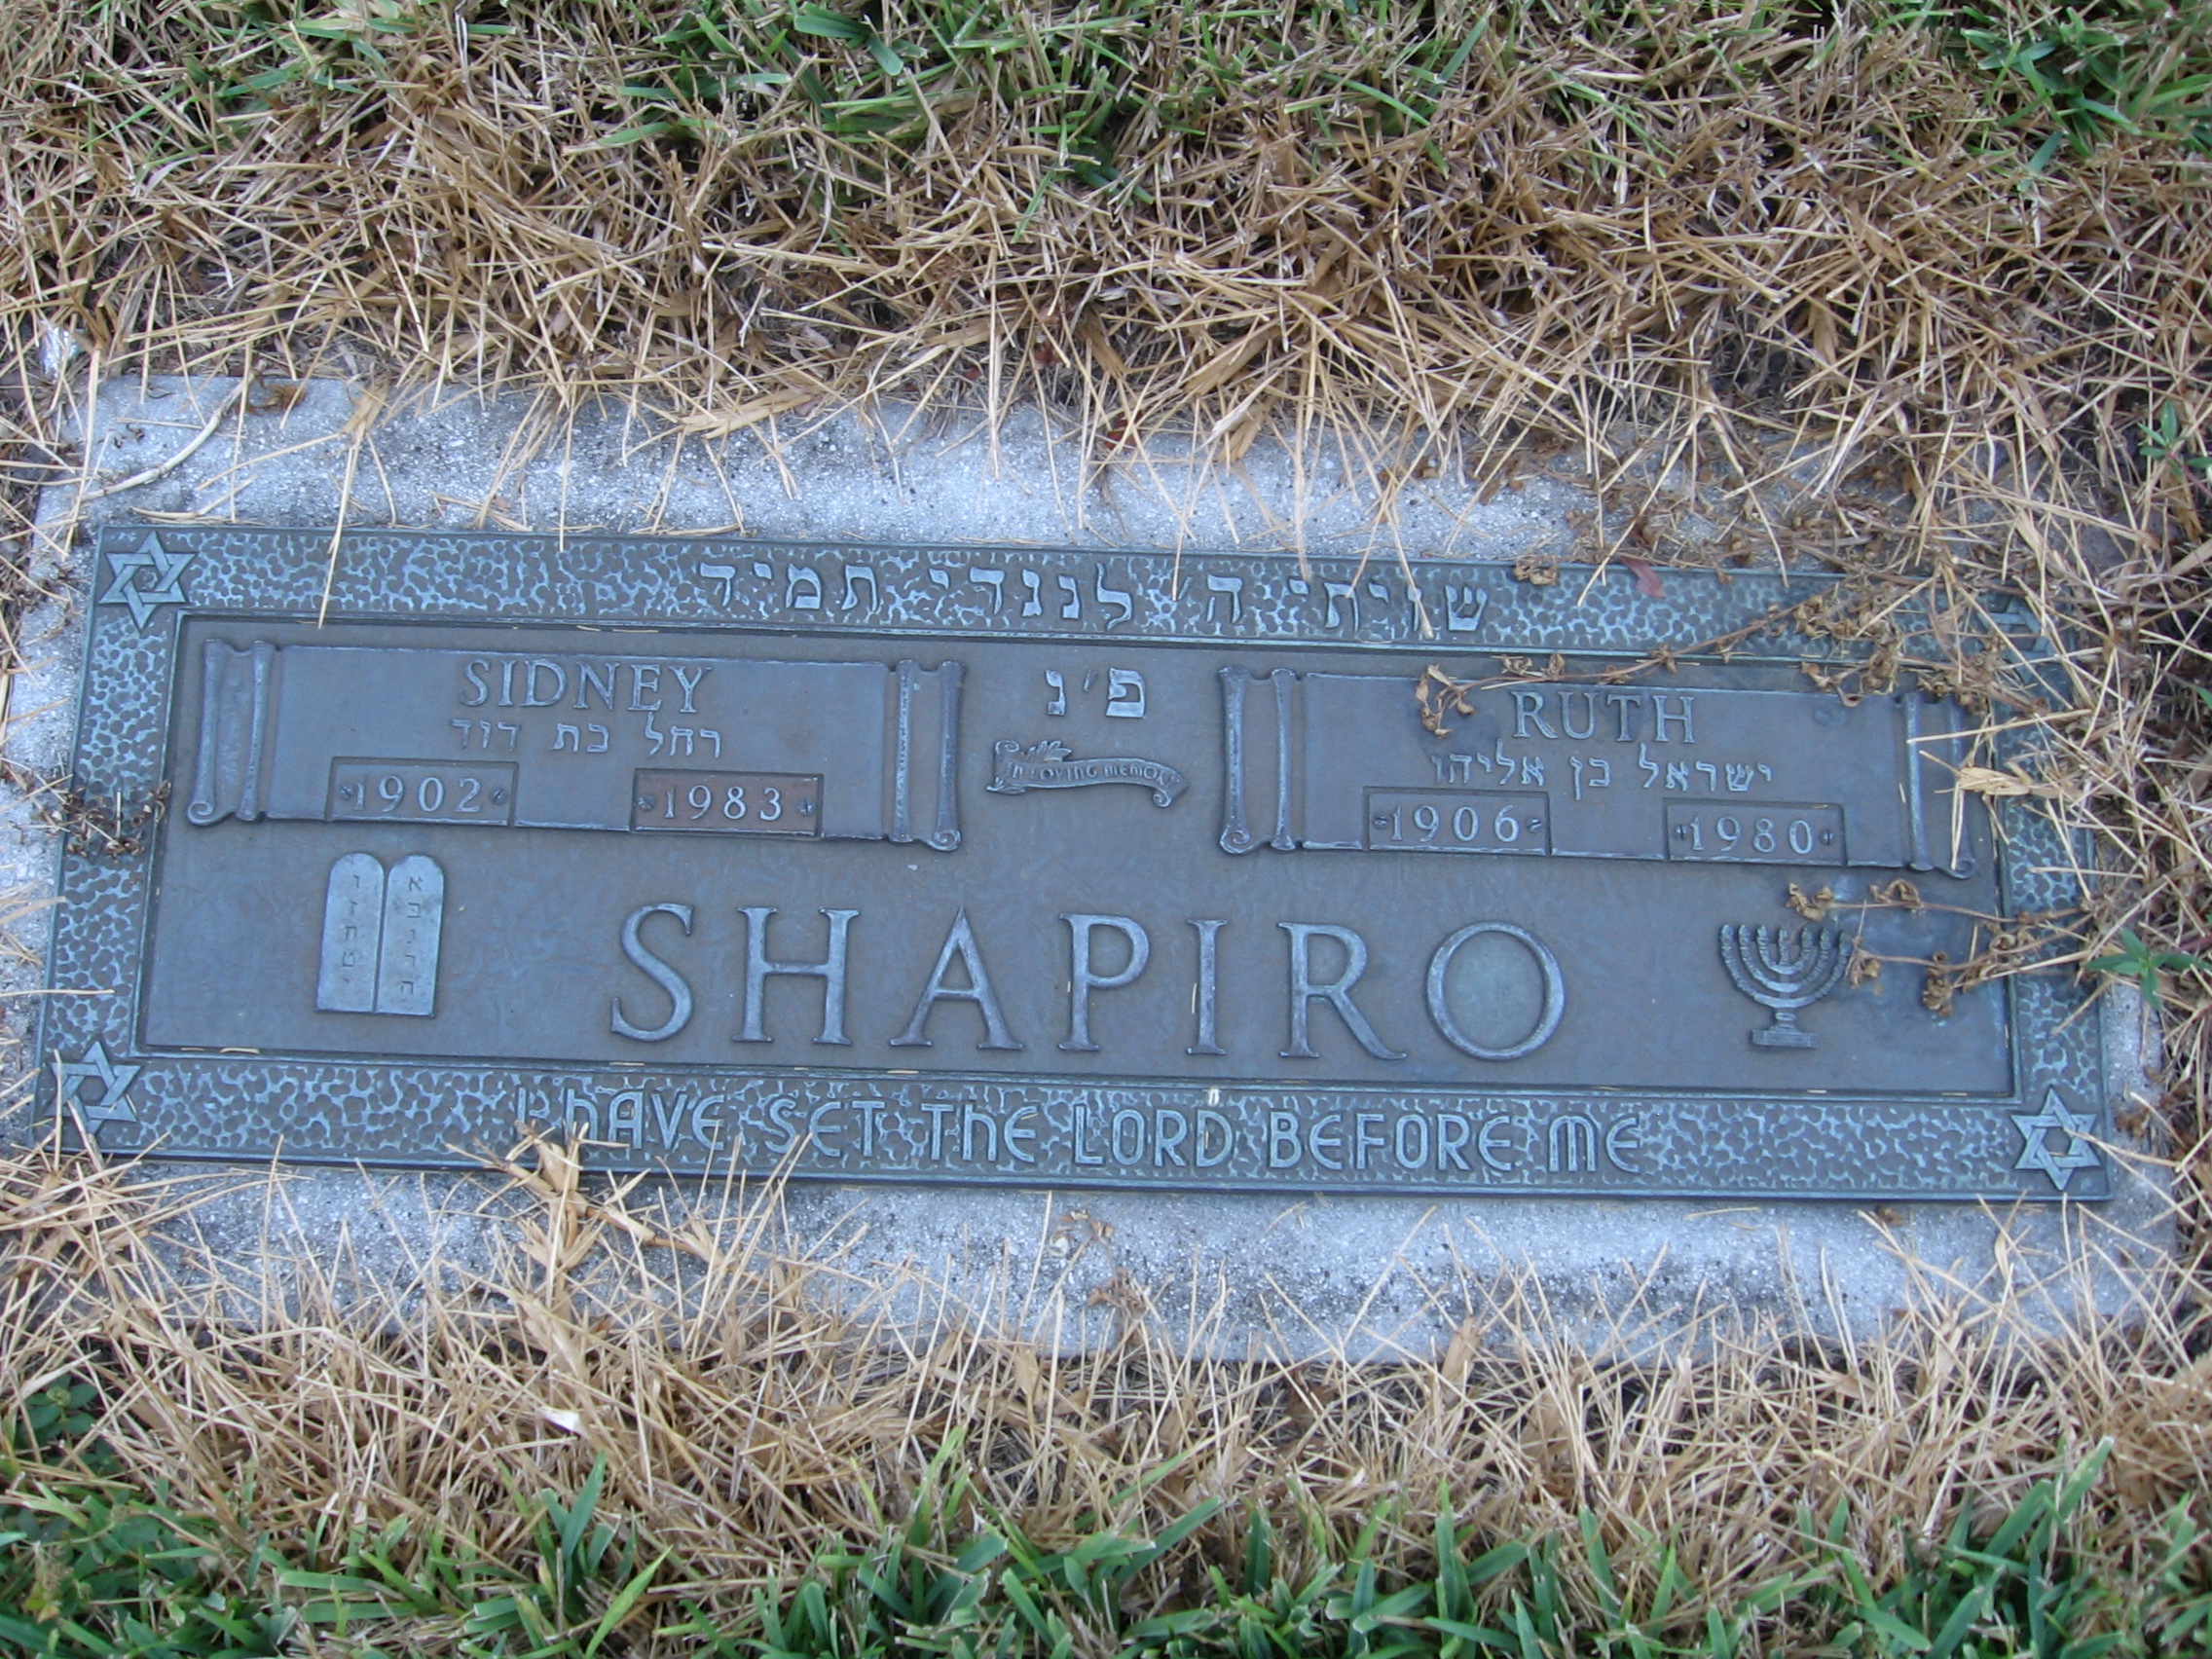 Sidney Shapiro